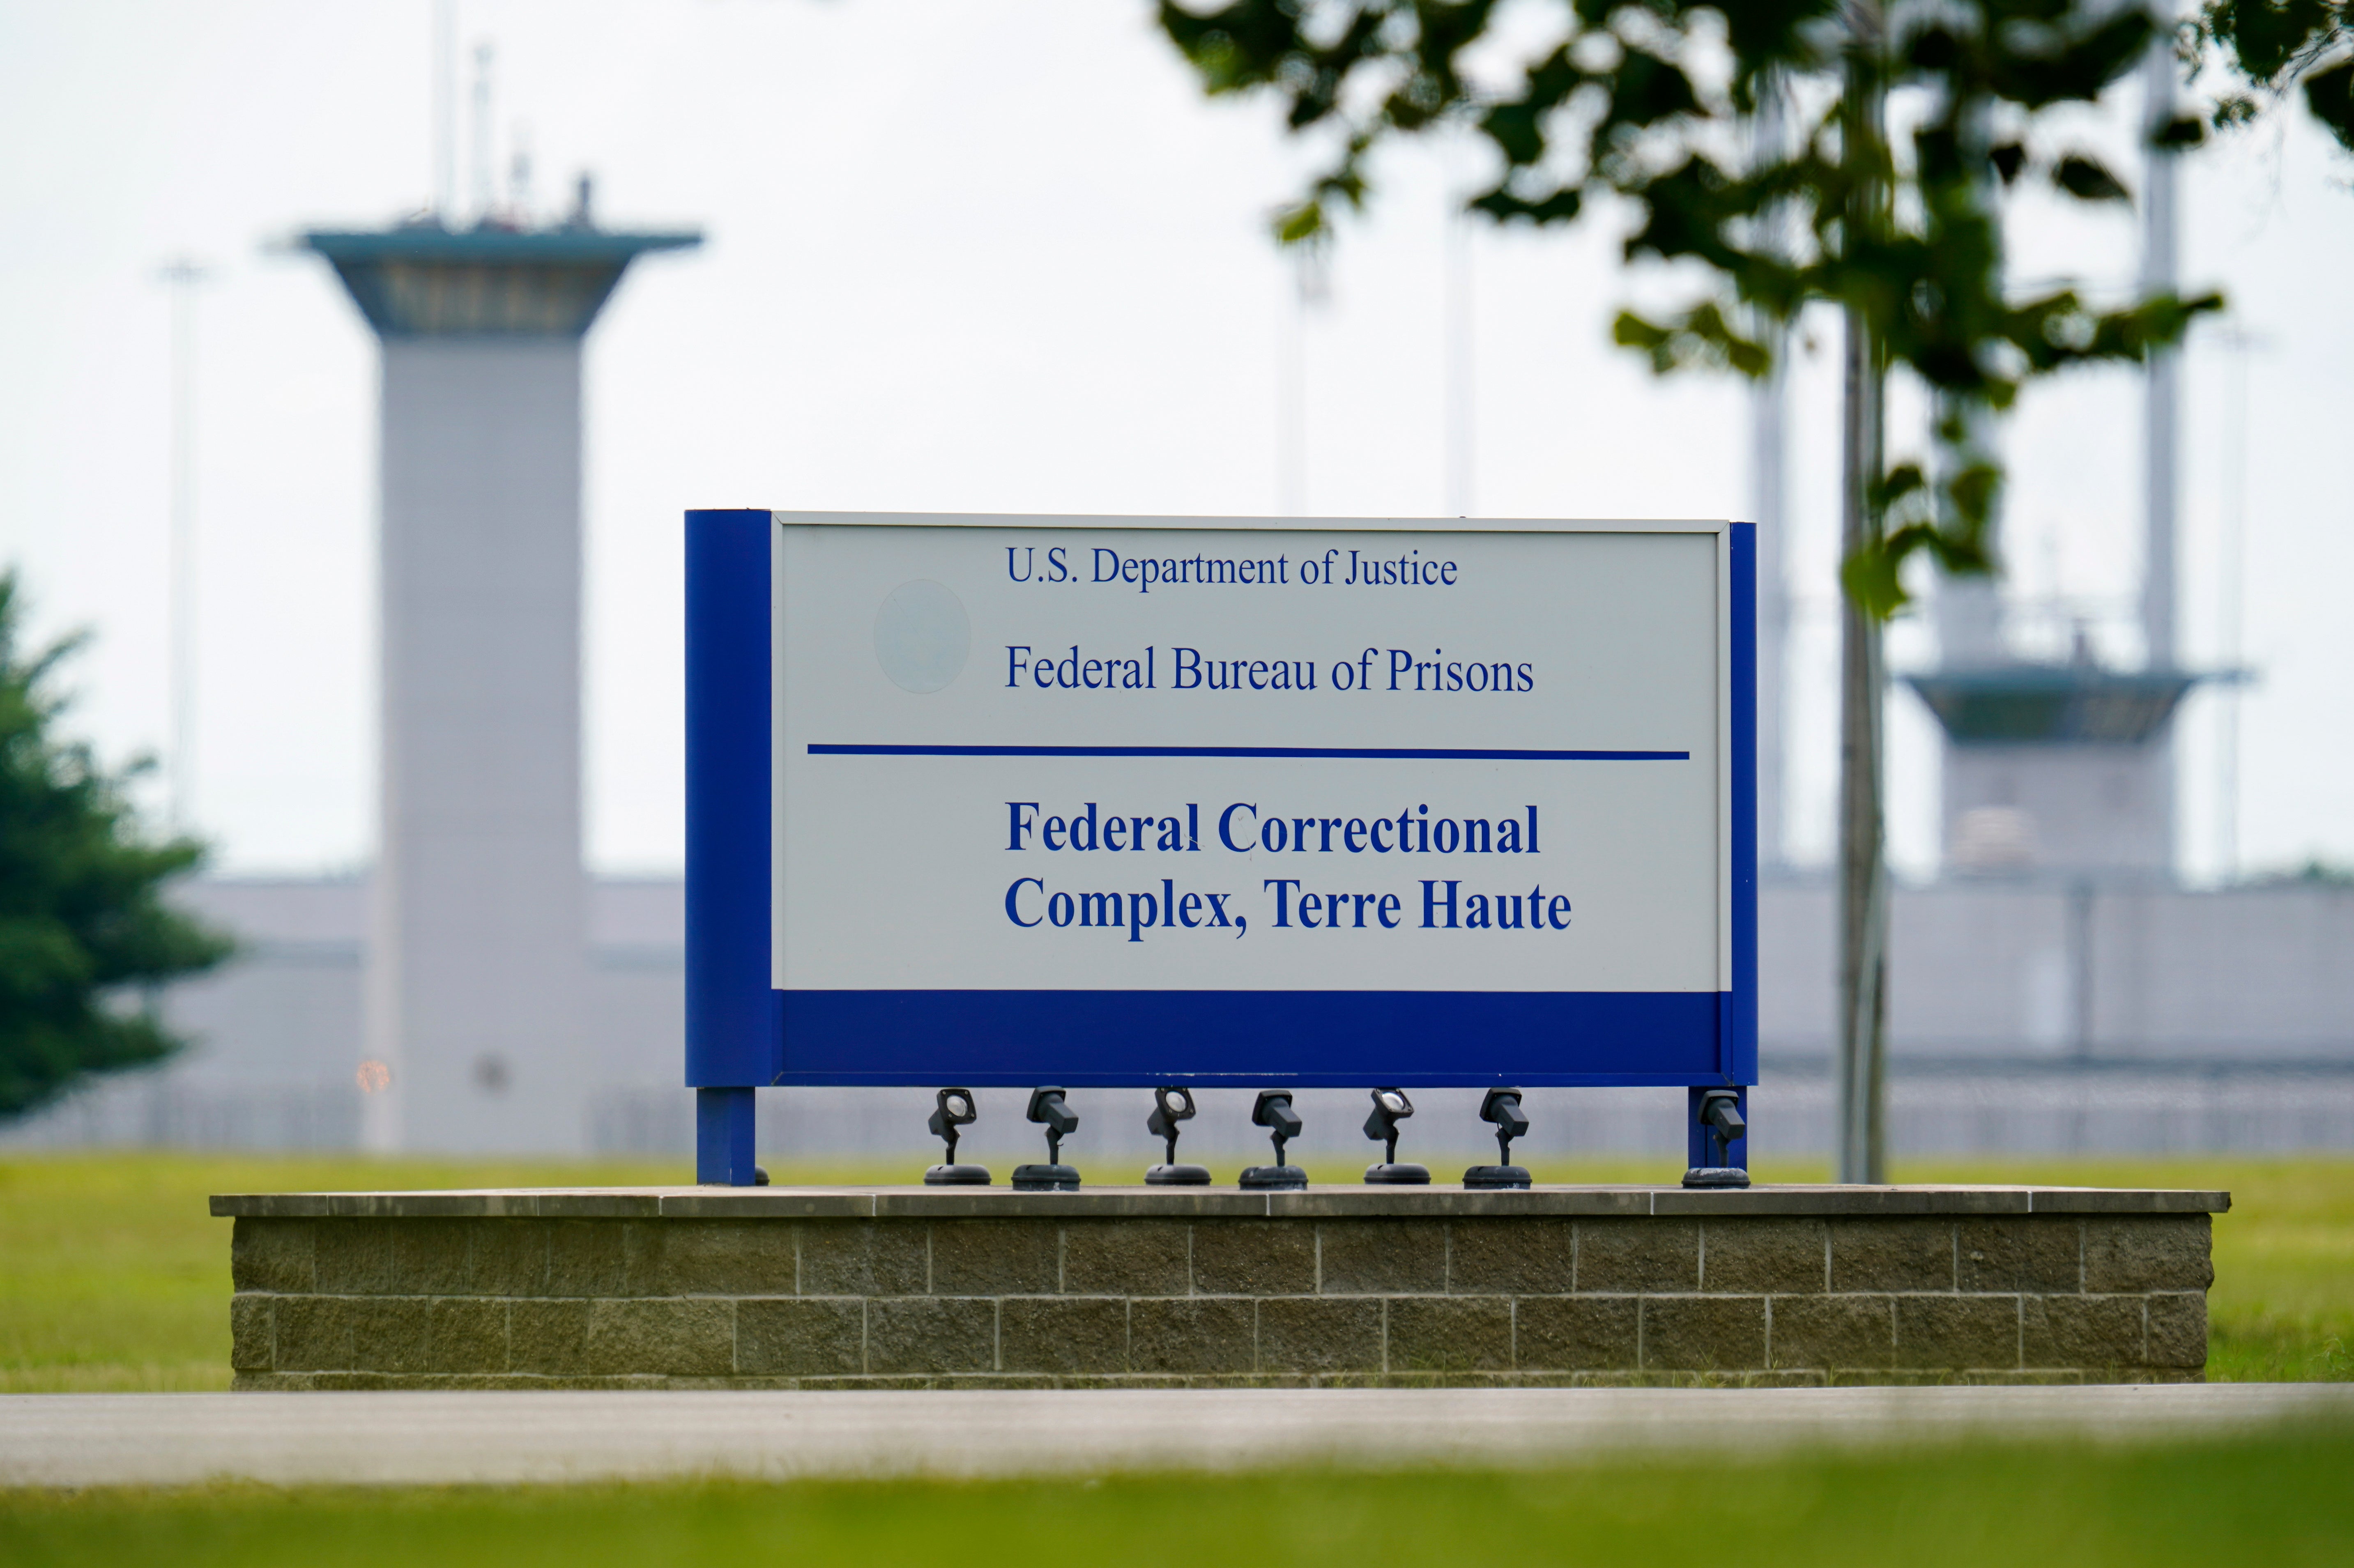 La oficina penitenciaria llevó a cabo el jueves la octava ejecución federal este año